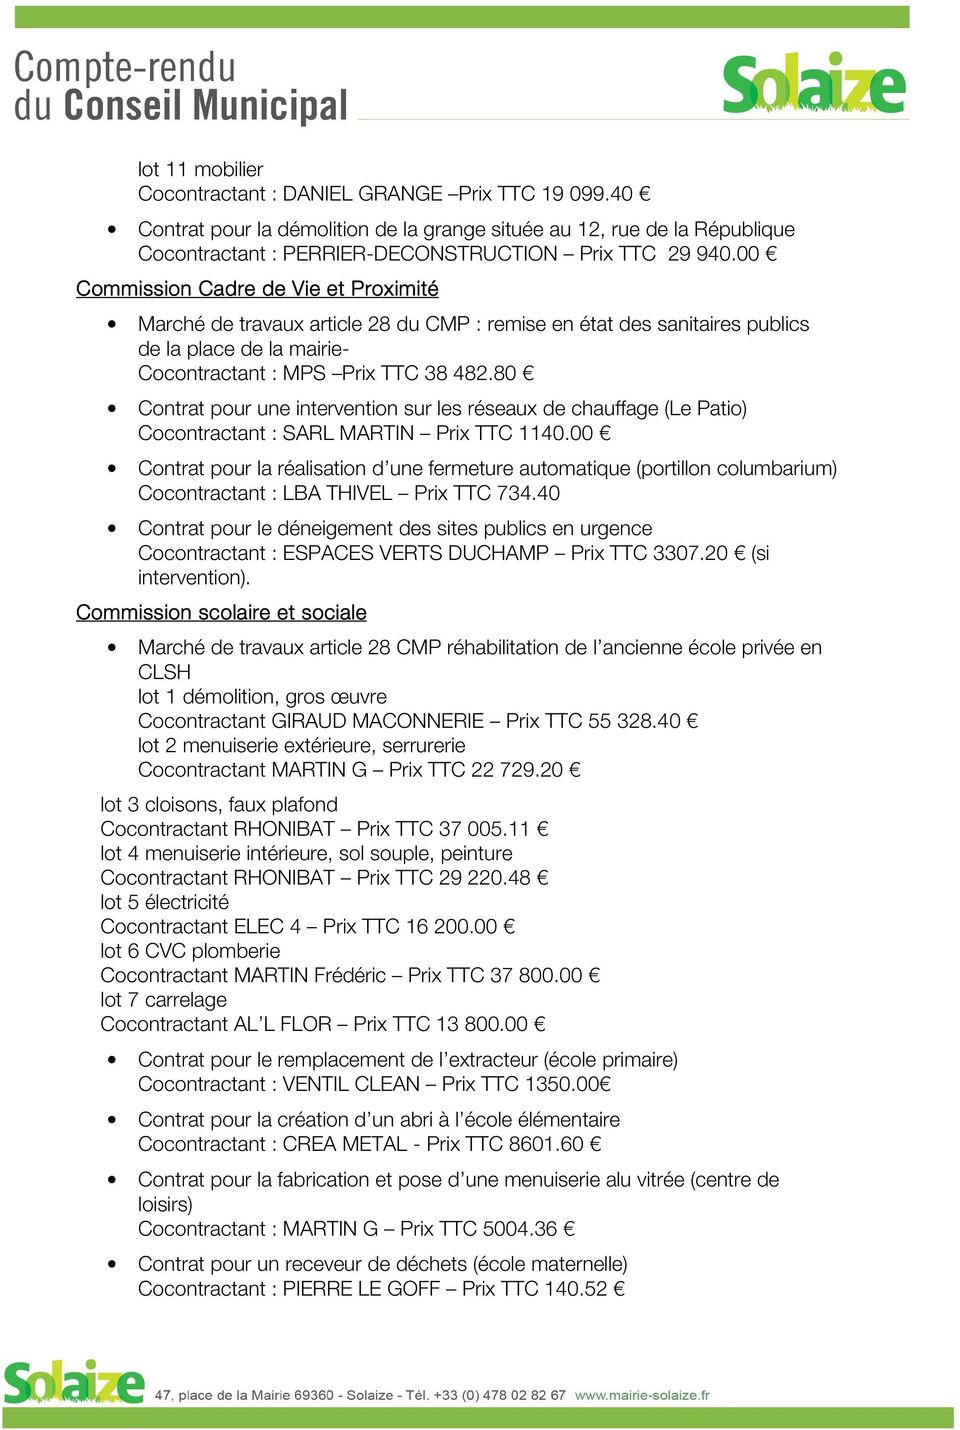 80 Contrat pour une intervention sur les réseaux de chauffage (Le Patio) Cocontractant : SARL MARTIN Prix TTC 1140.